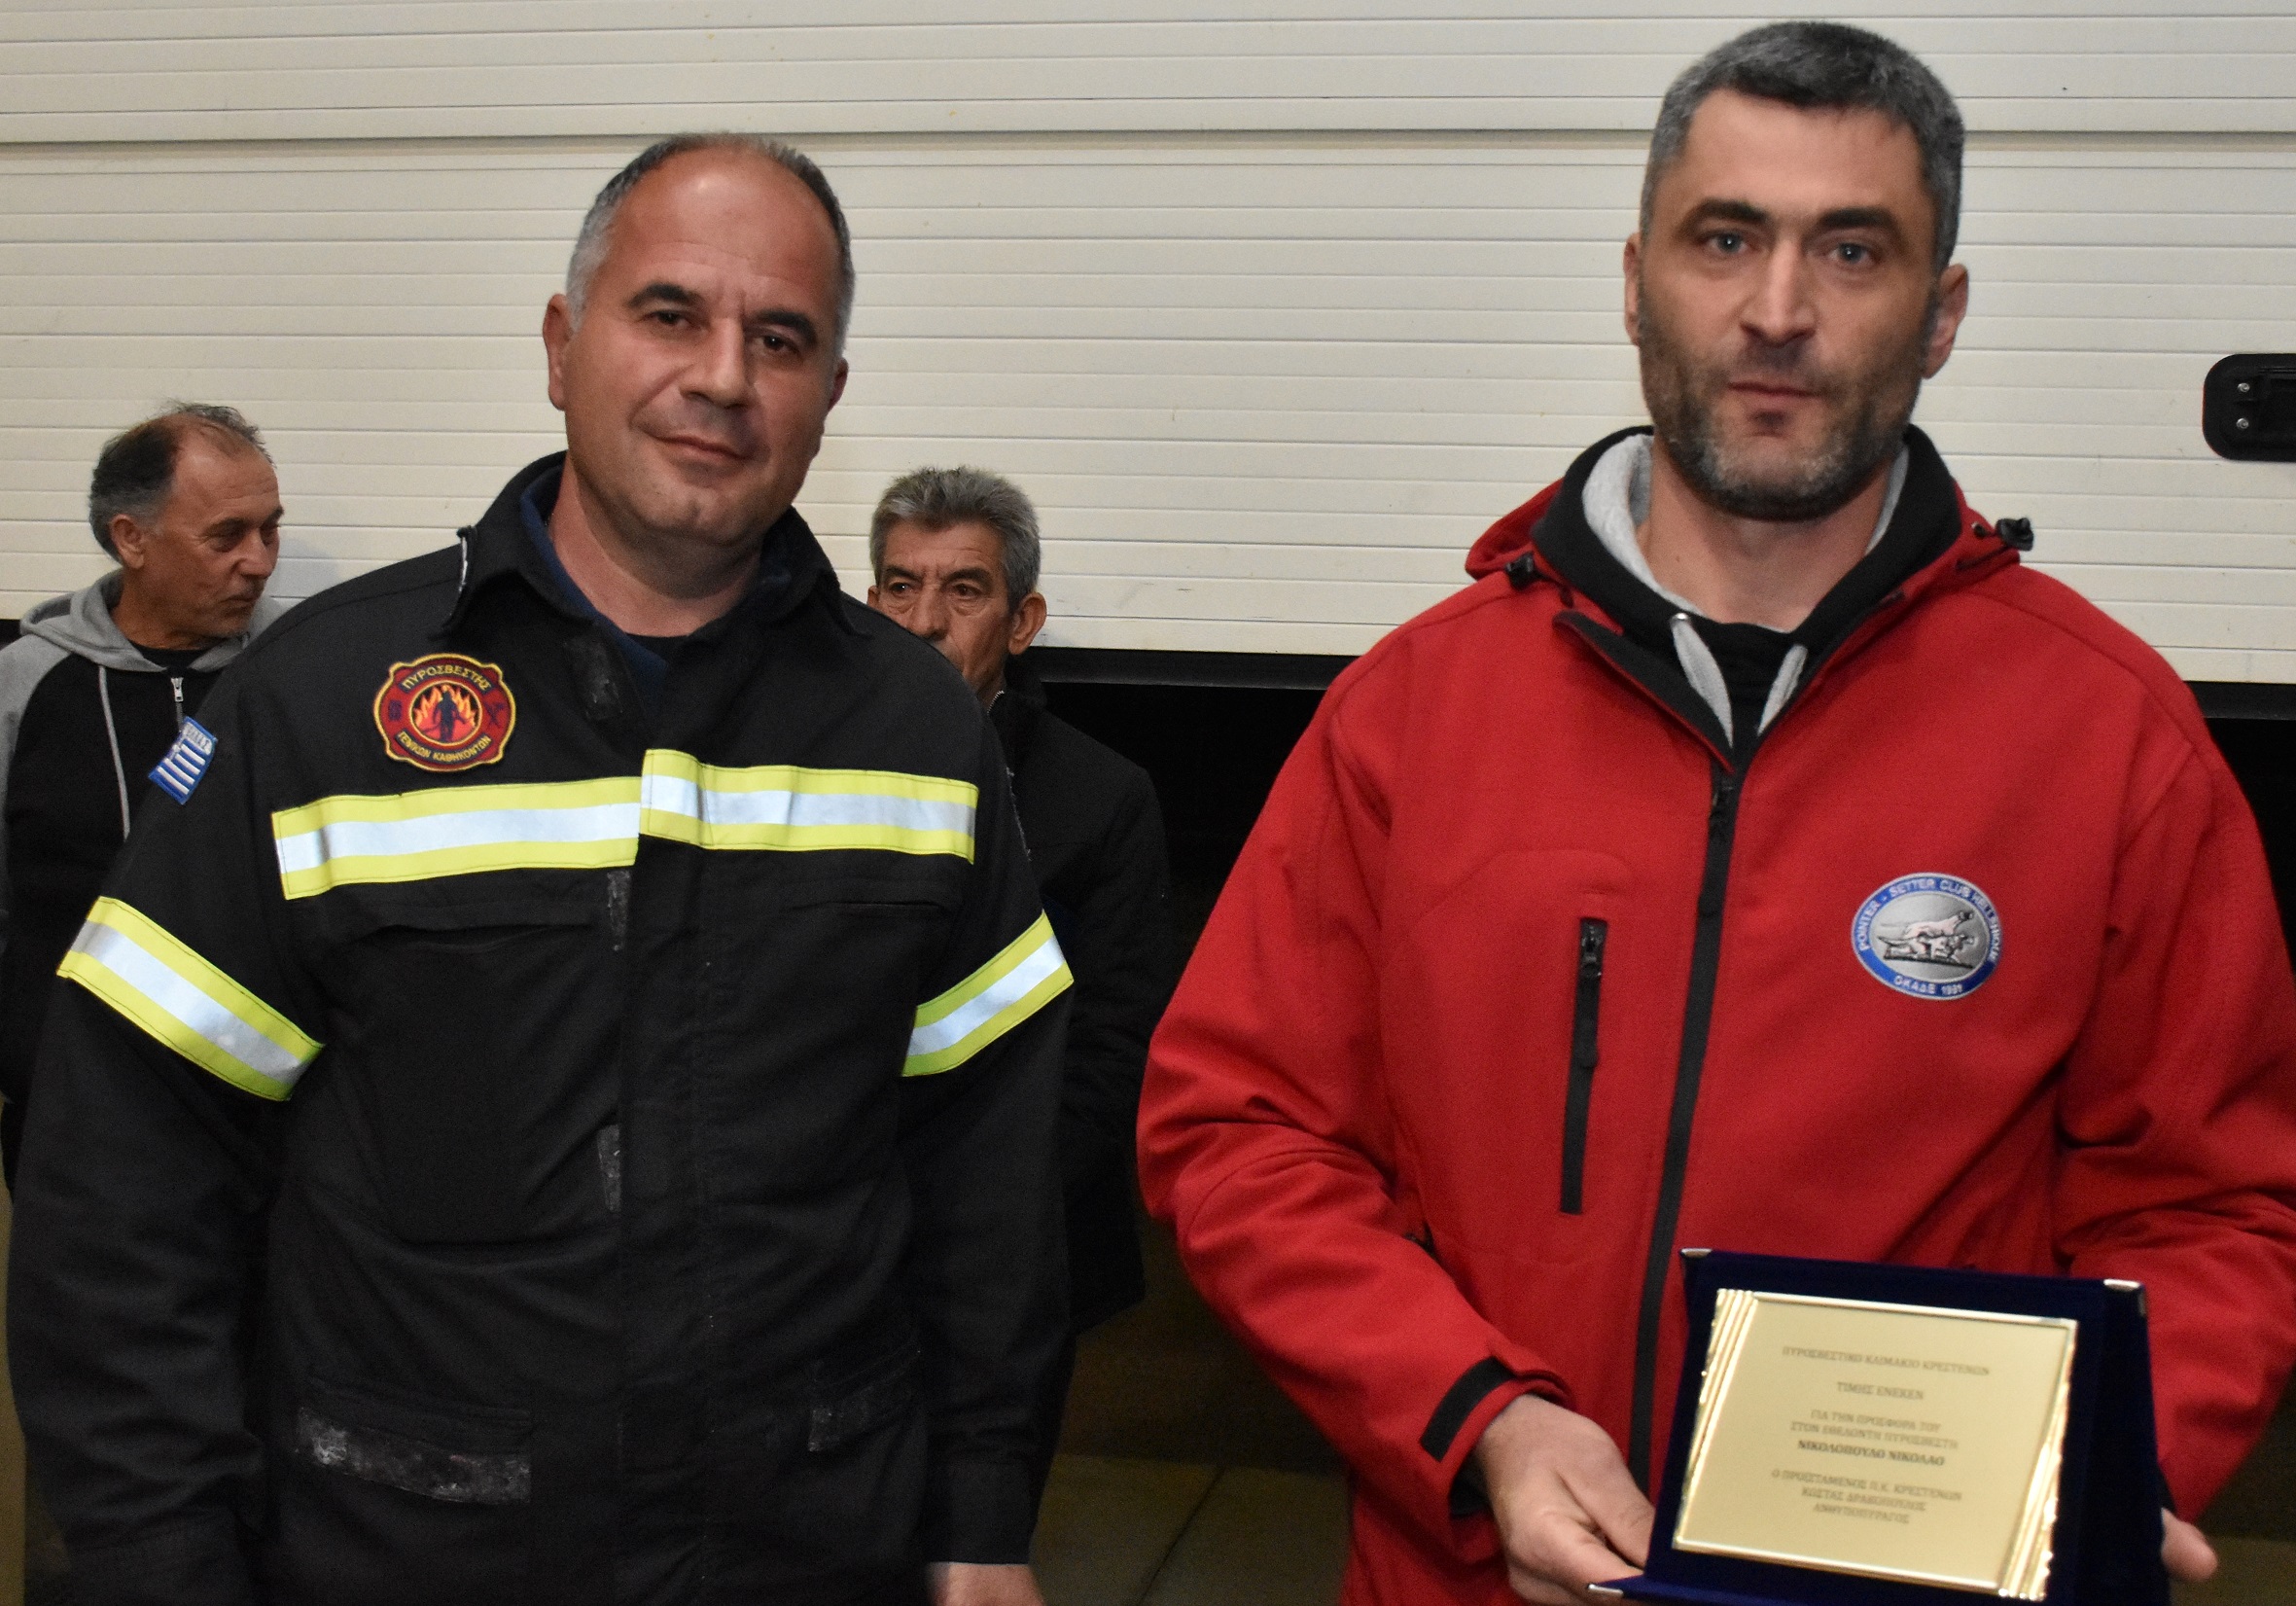 Βράβευση Εθελοντών Πυροσβεστών από το Πυροσβεστικό Κλιμάκιο Κρεστένων